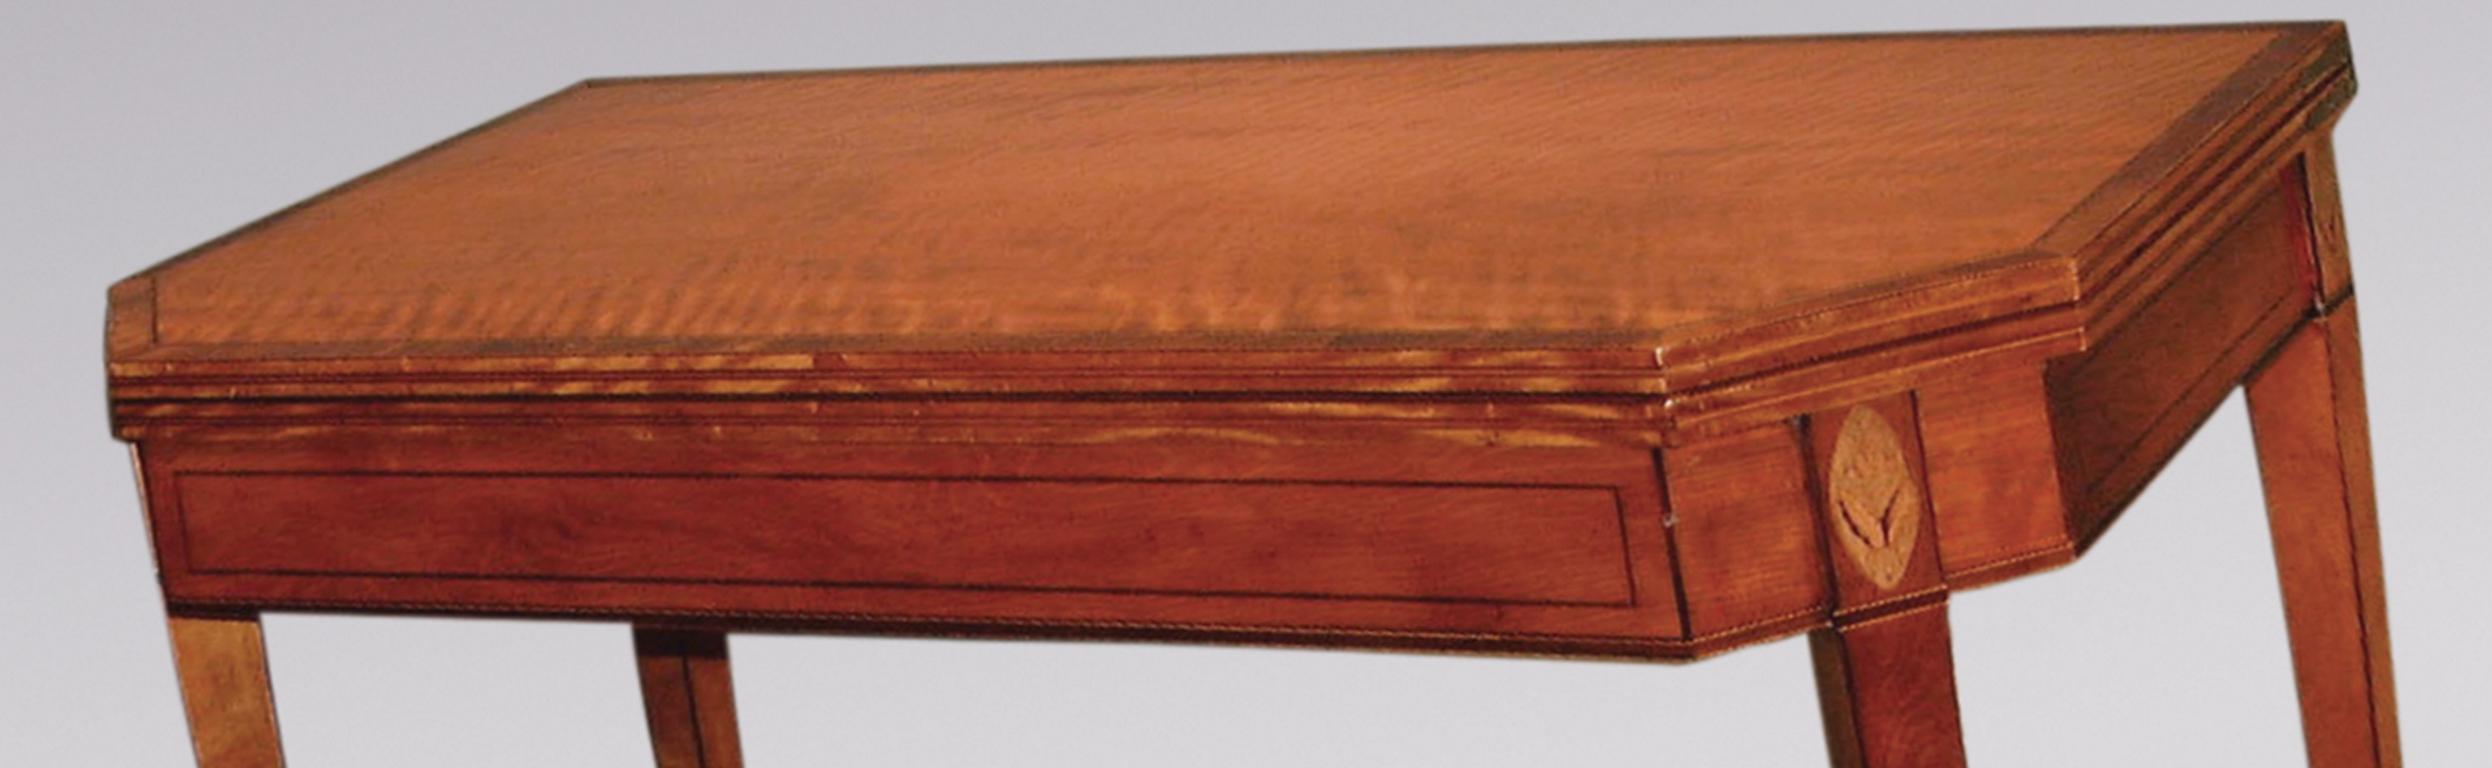 Une fine table à cartes en bois de satin de la période Sheraton de la fin du 18e siècle, avec des bandes croisées en bois de rose et des cordes en buis et en ébène, avec un plateau à angle droit au-dessus d'une frise de panneaux avec des patères